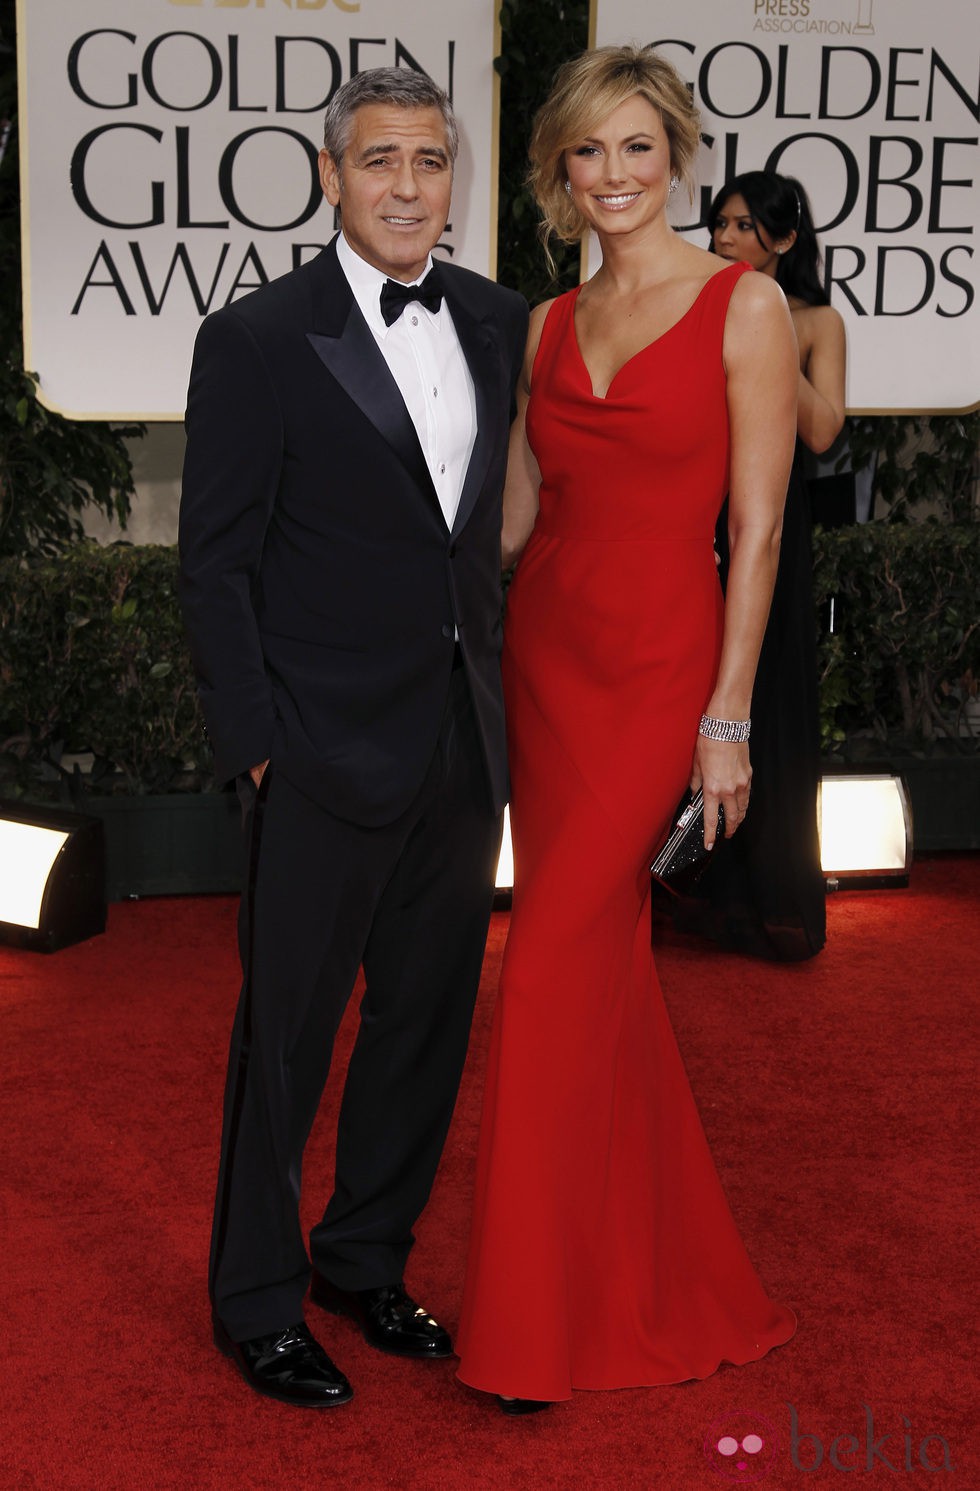 George Clooney y Stacy Kleiber en la alfombra roja de los Globos de Oro 2012